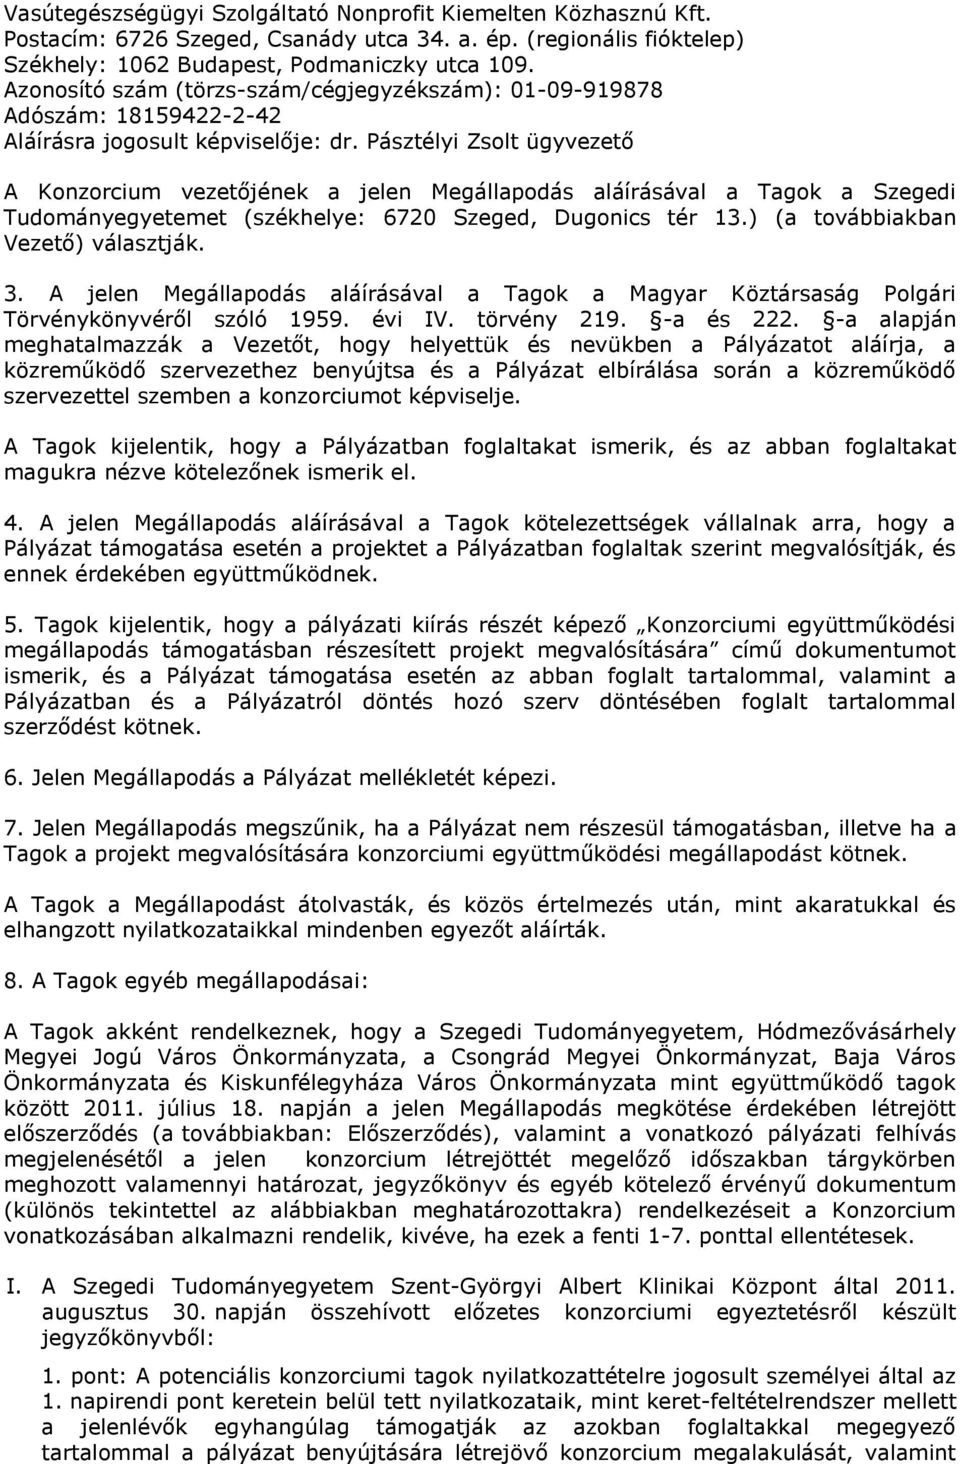 Pásztélyi Zsolt ügyvezető A Konzorcium vezetőjének a jelen Megállapodás aláírásával a Tagok a Szegedi Tudományegyetemet (székhelye: 6720 Szeged, Dugonics tér 13.) (a továbbiakban Vezető) választják.